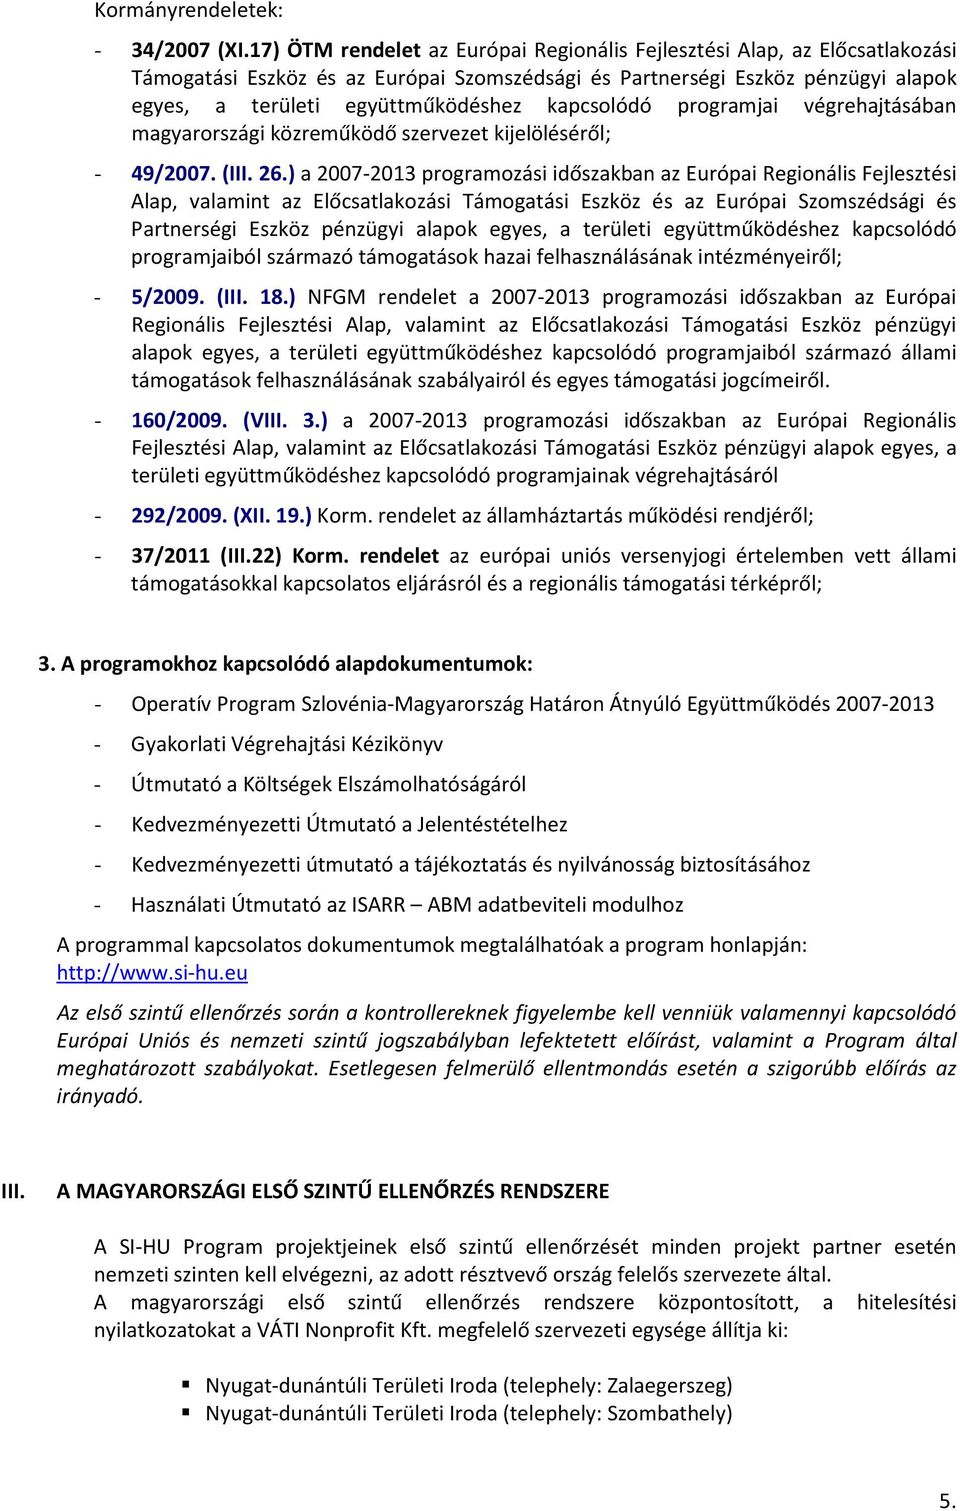 kapcsolódó programjai végrehajtásában magyarországi közreműködő szervezet kijelöléséről; - 49/2007. (III. 26.